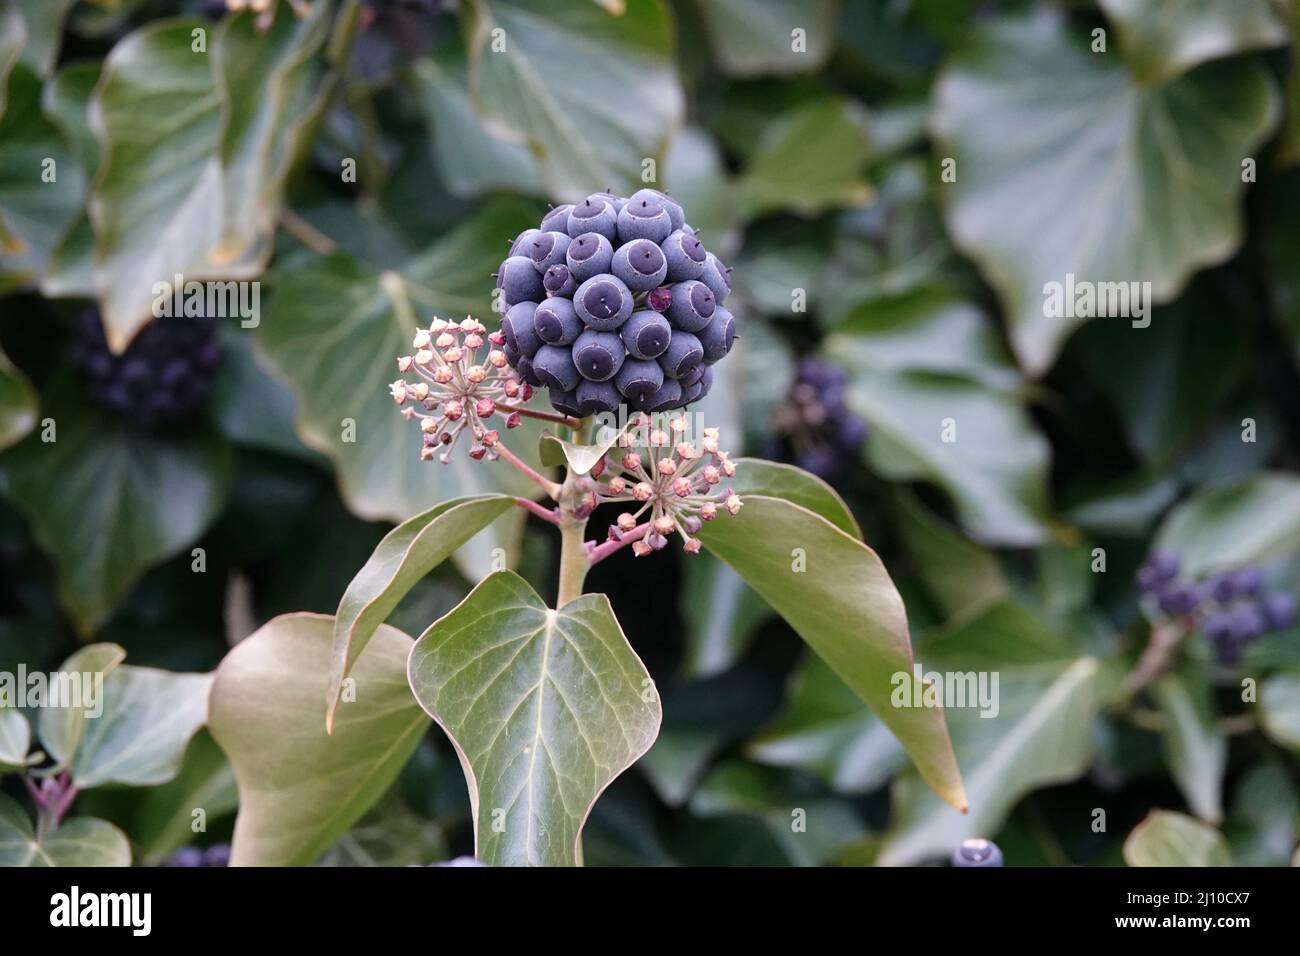 Purple ripe berries of common ivy Stock Photo